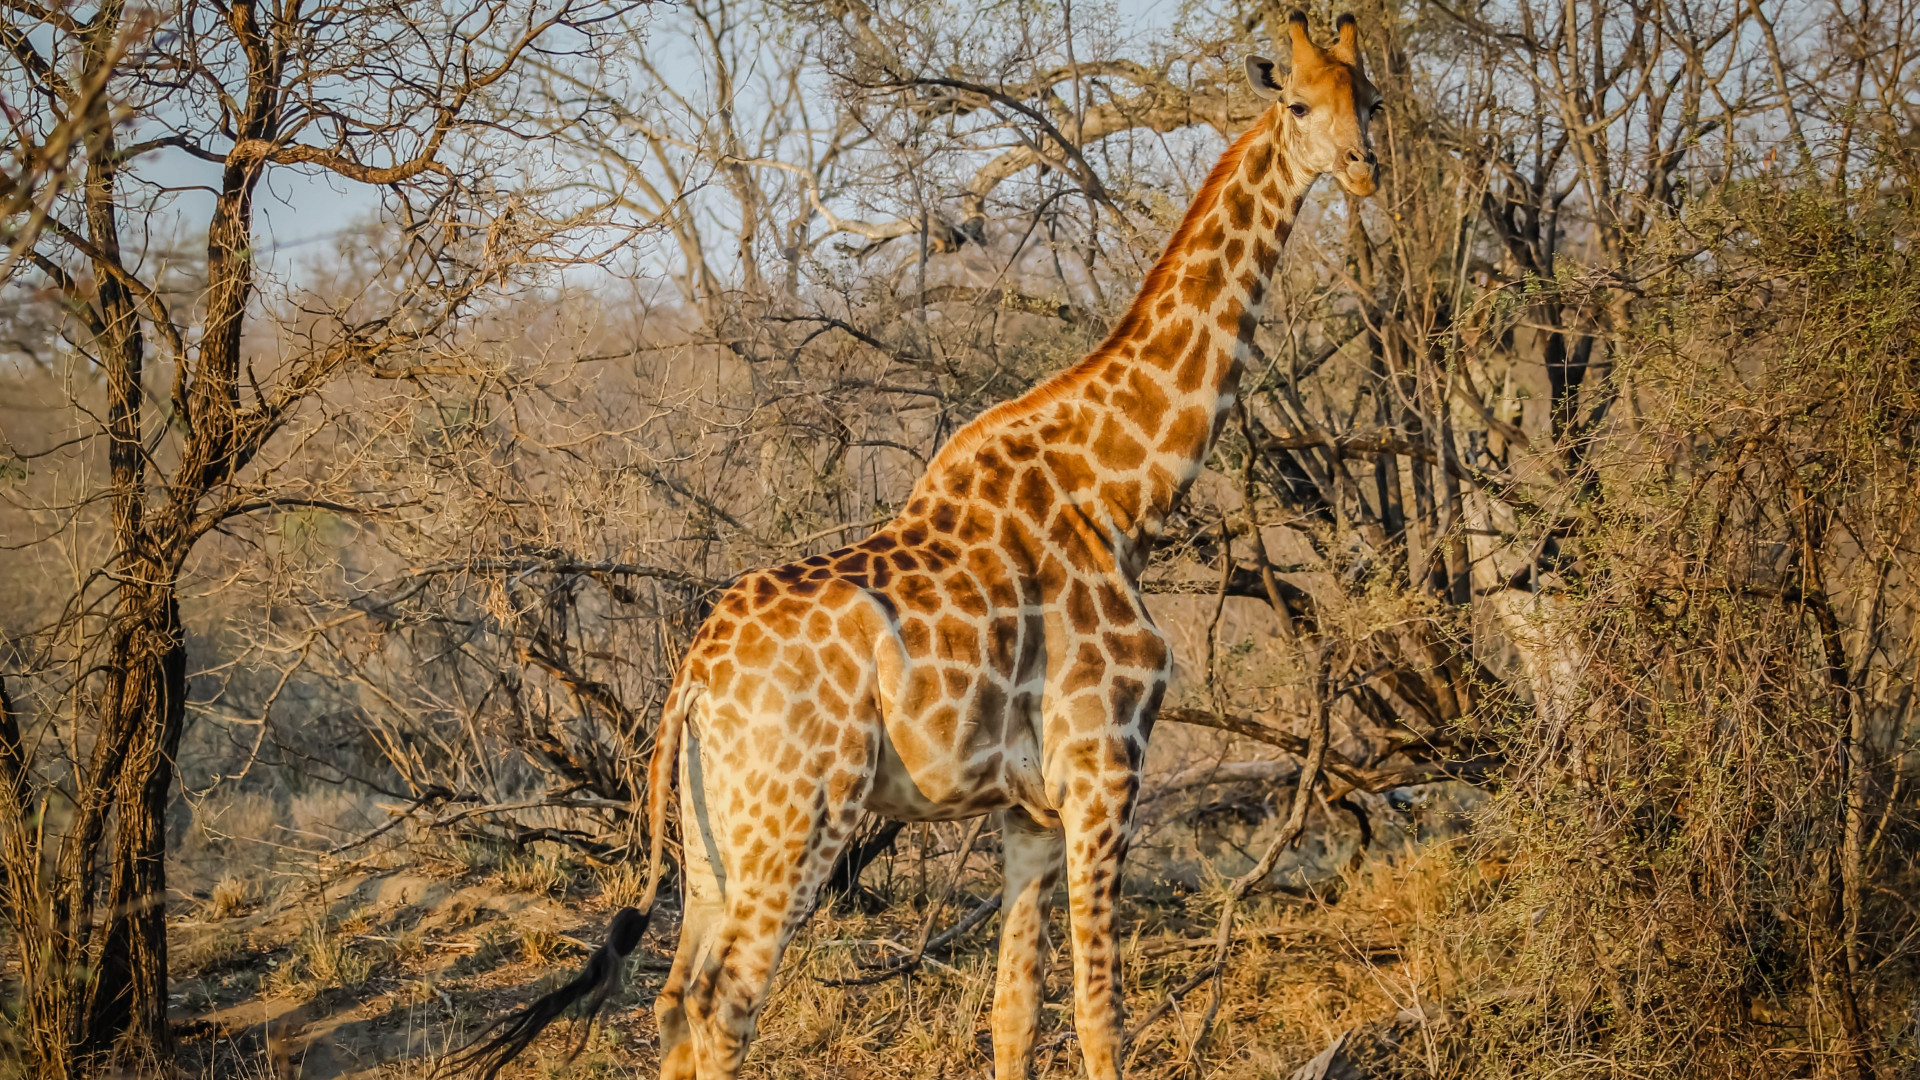 giraffe safari animal